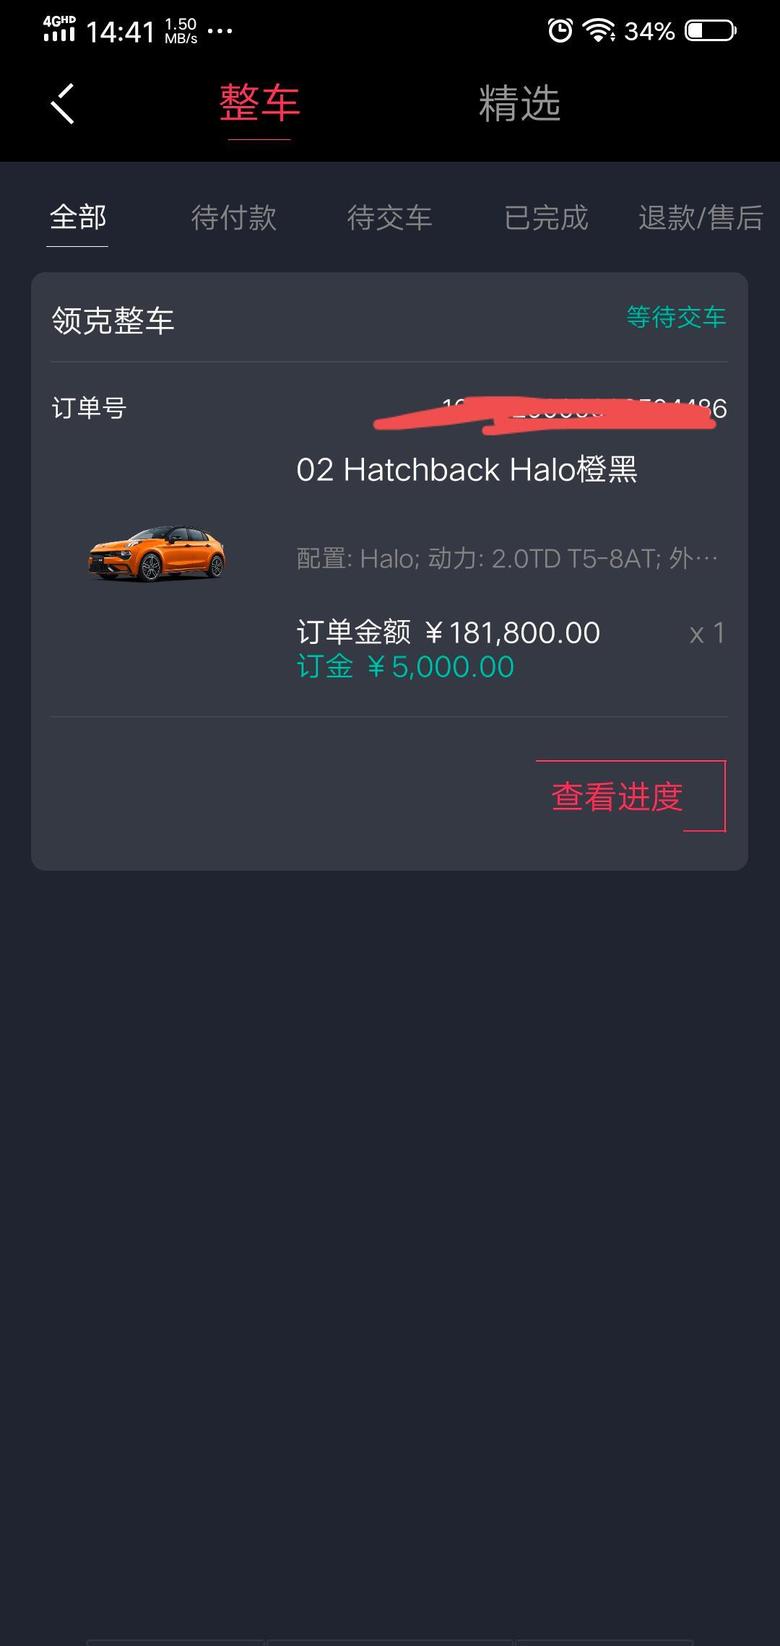 领克02 hatchback有点焦虑人在杭州没对象埋头工作首付准备自己出5万家里给7.5万两年月供不到4000感觉压力有点大因为生活成本比较高搞艺术的